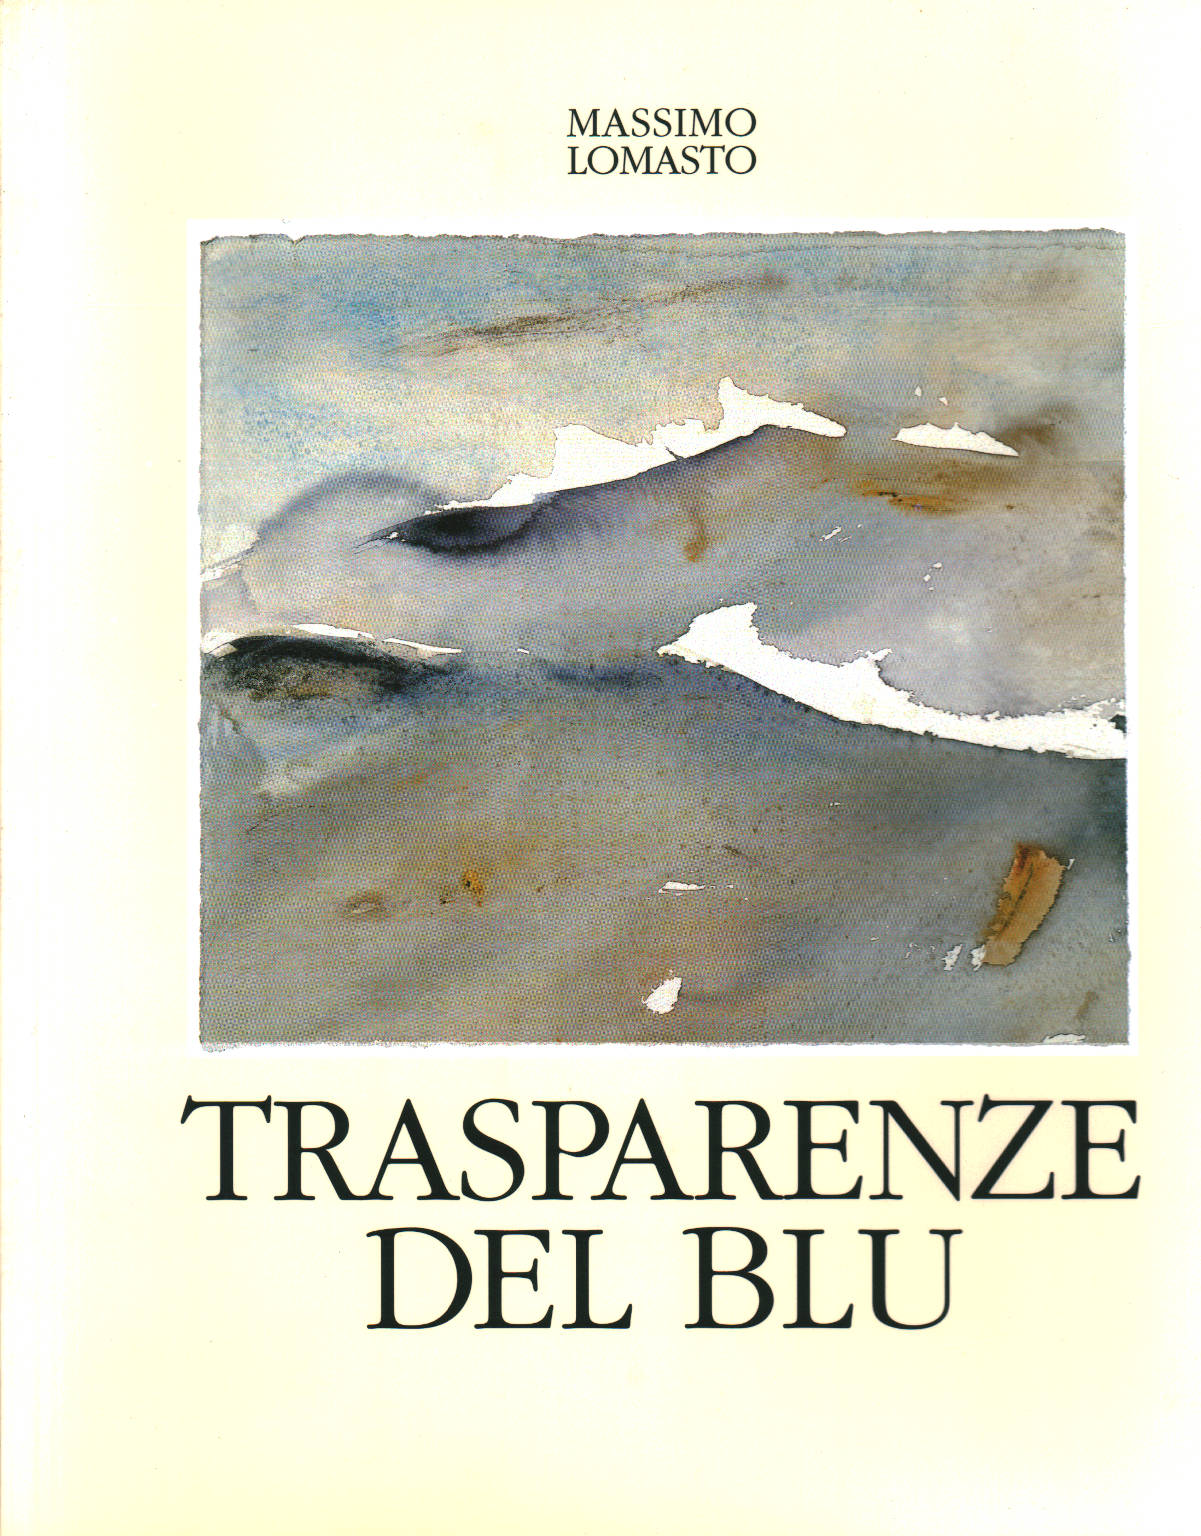 Trasparenze del blu, Massimo Lomasto